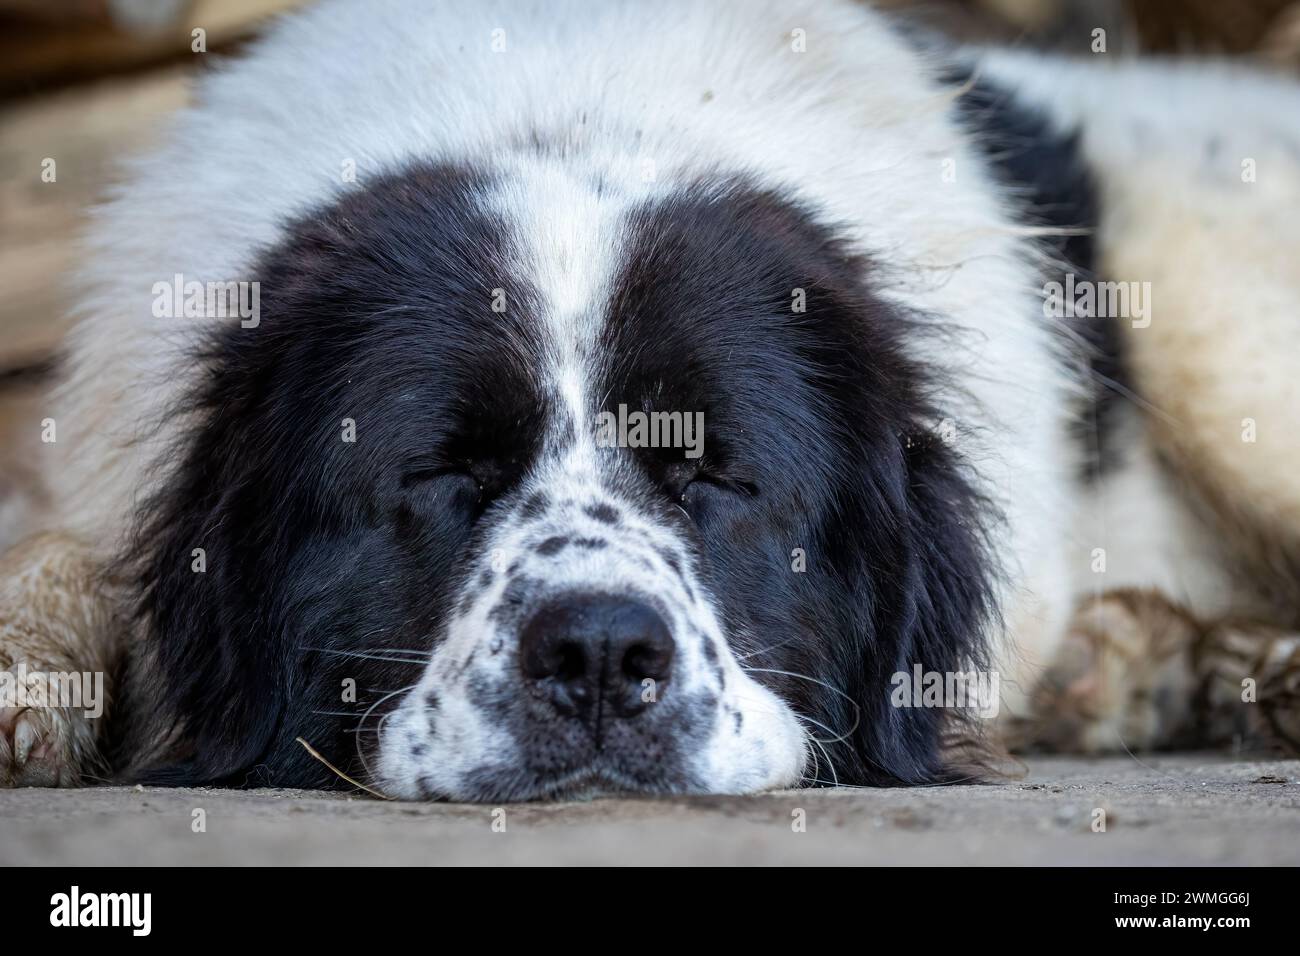 A Bukowina Shepherd  dog Stock Photo